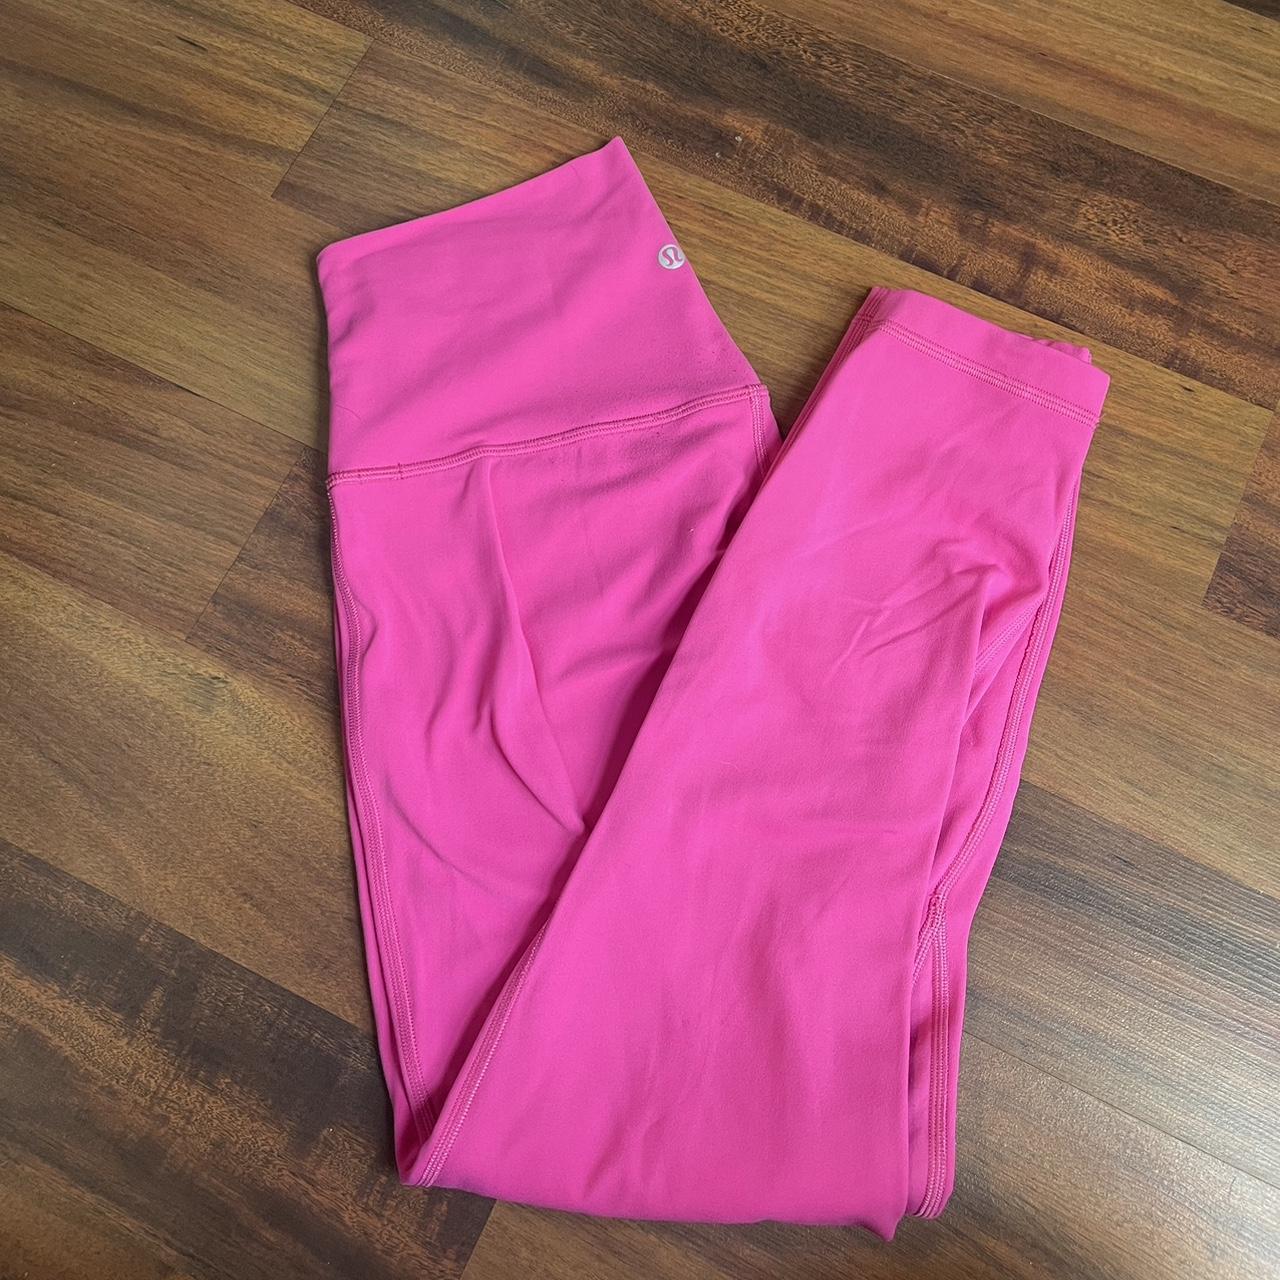 25” Lululemon sonic pink align leggings - Depop